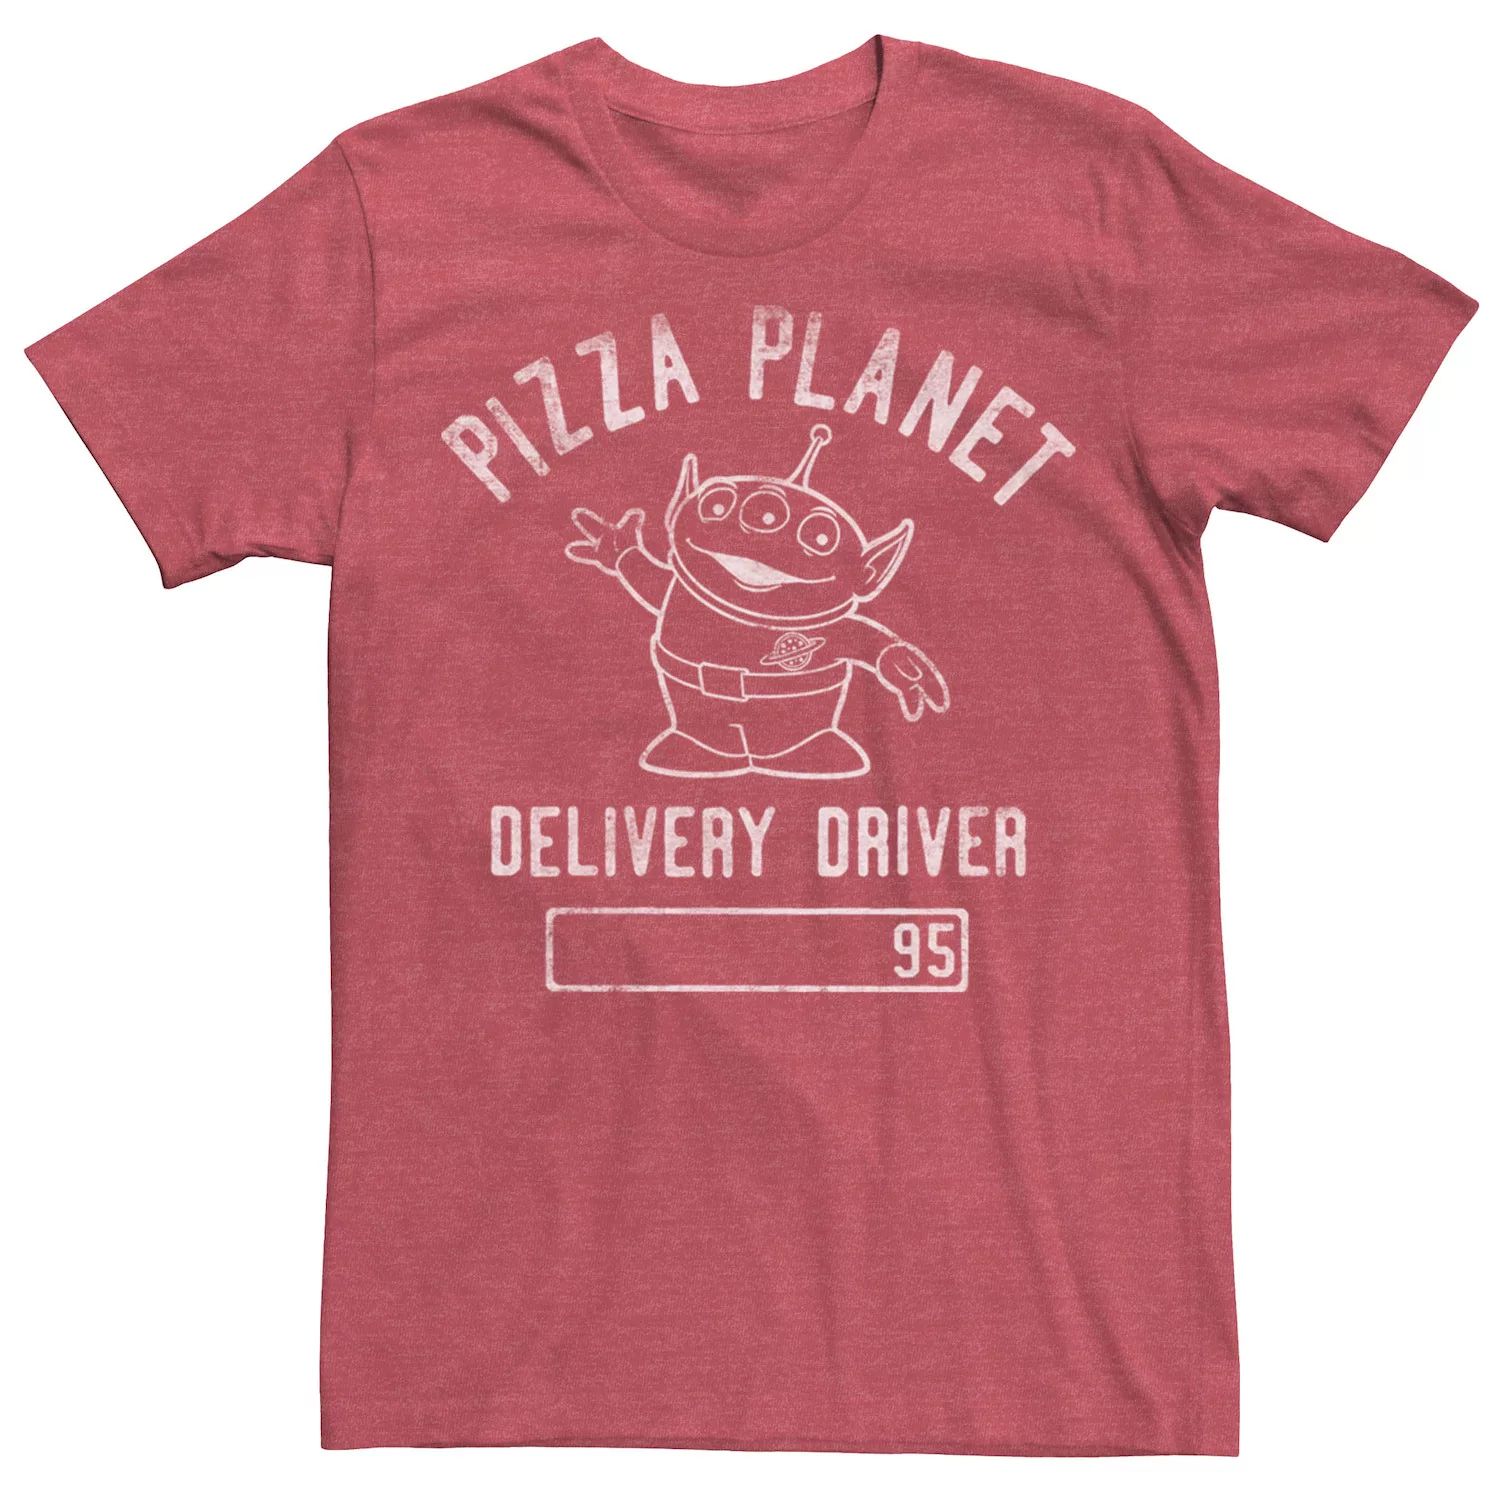 Мужская футболка «История игрушек Пицца Планета доставки» Disney / Pixar